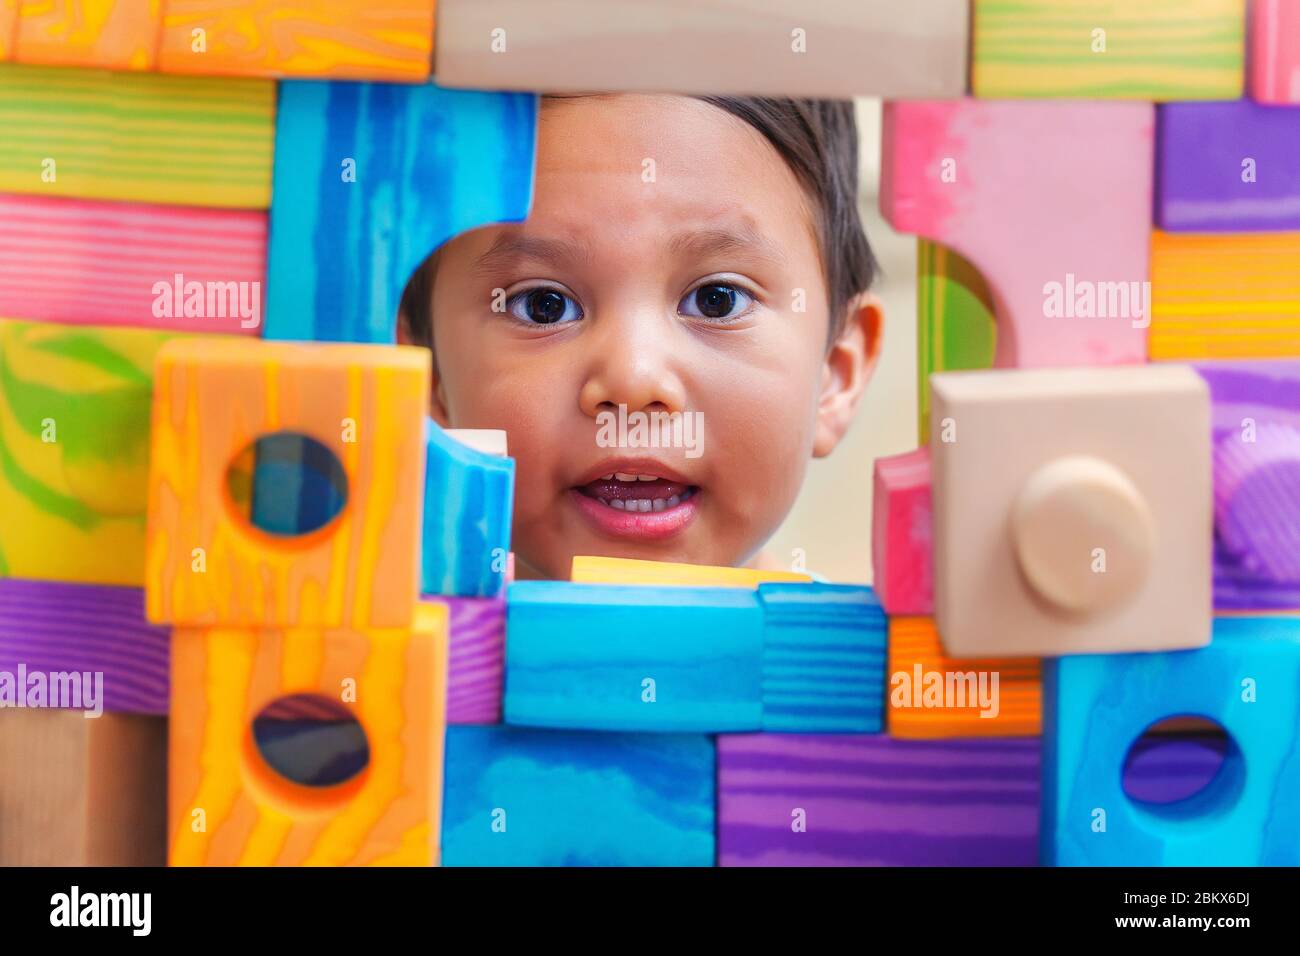 Un niño pequeño mostrando su cara a través de una ventana desde detrás de una pared de bloques de construcción con varias formas y colores. Foto de stock